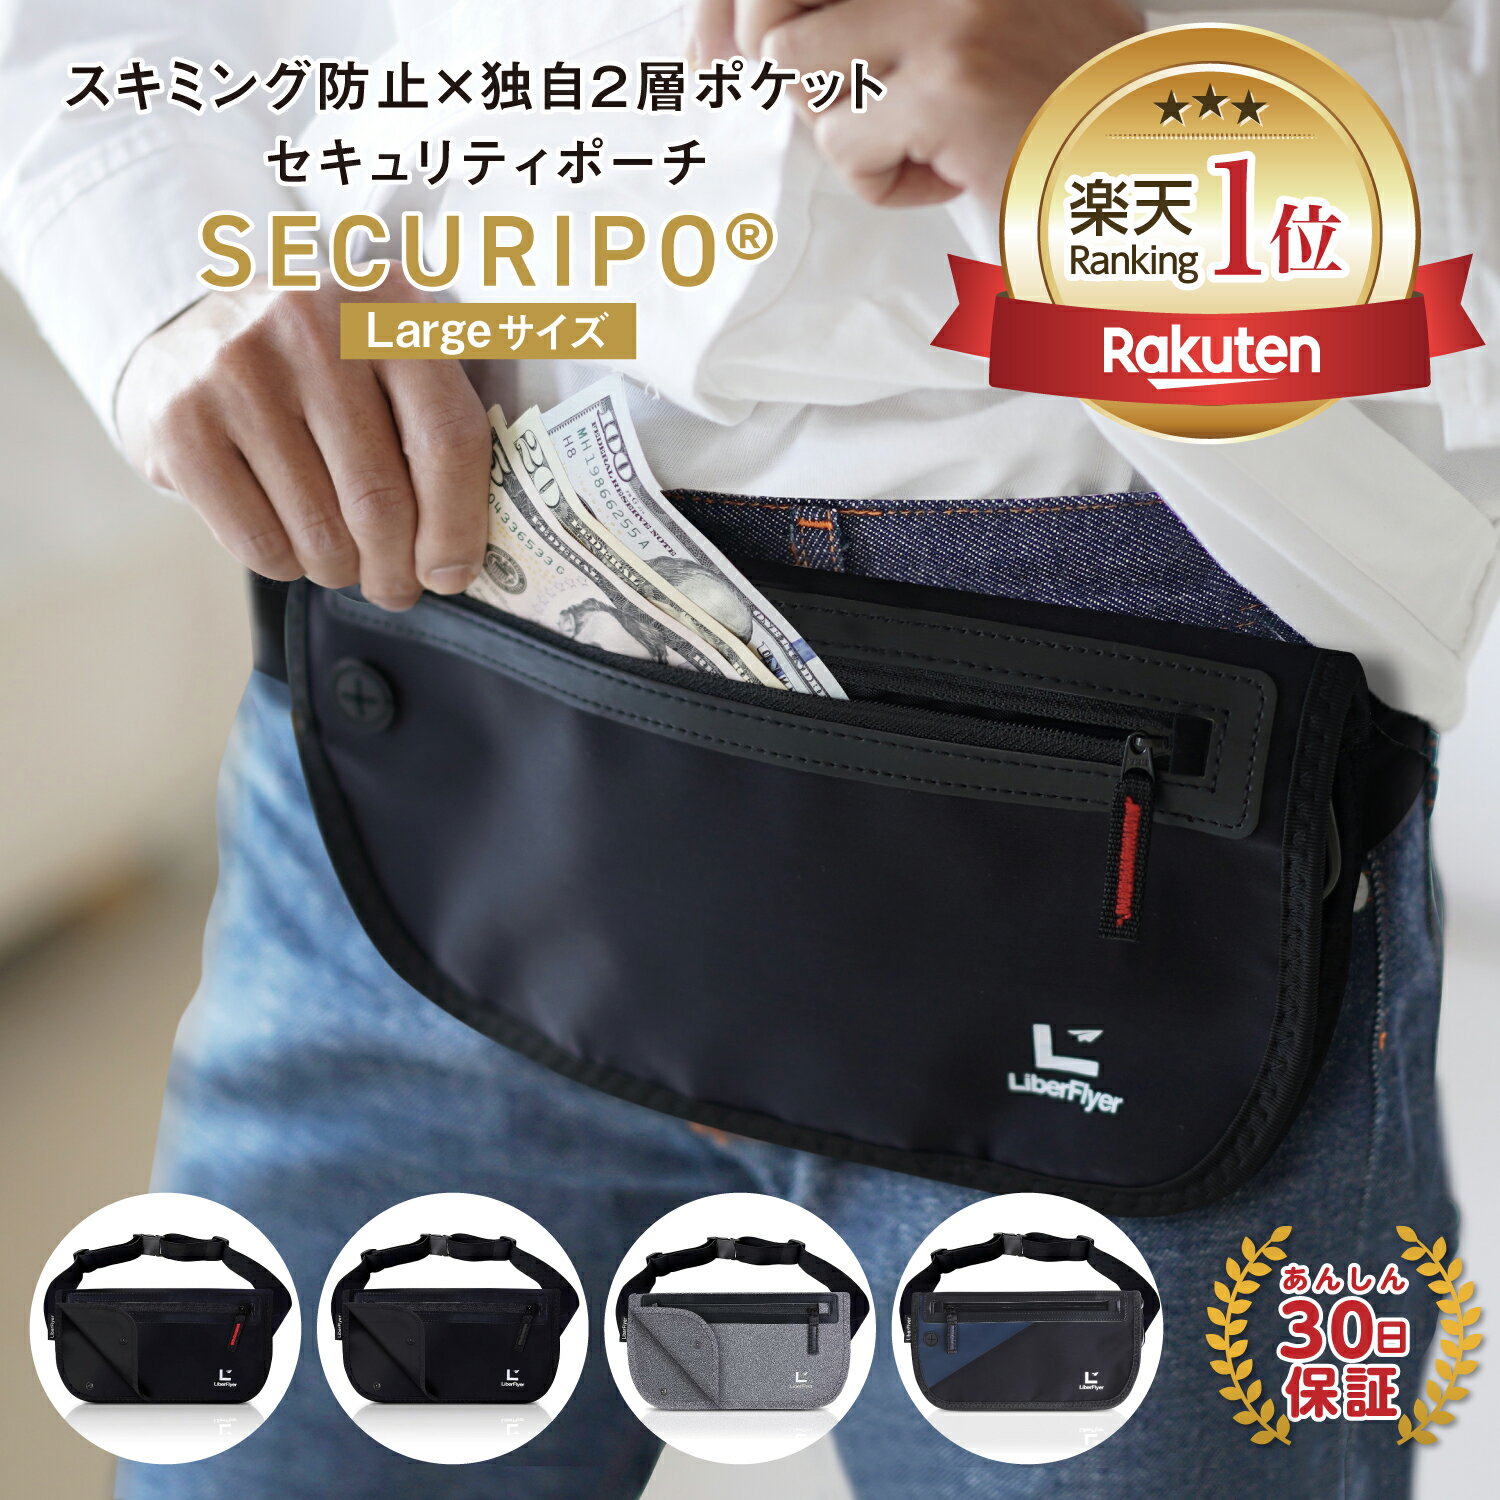 【公式】セキュリポ Lサイズ スマートに貴重品を守る×独自2層ポケット セキュリティポーチ スキミング防止 パスポートケース 海外旅行 財布 パスポートケース 貴重品 SECURIPO リバーフライヤー LiberFlyer（赤ジッパー）